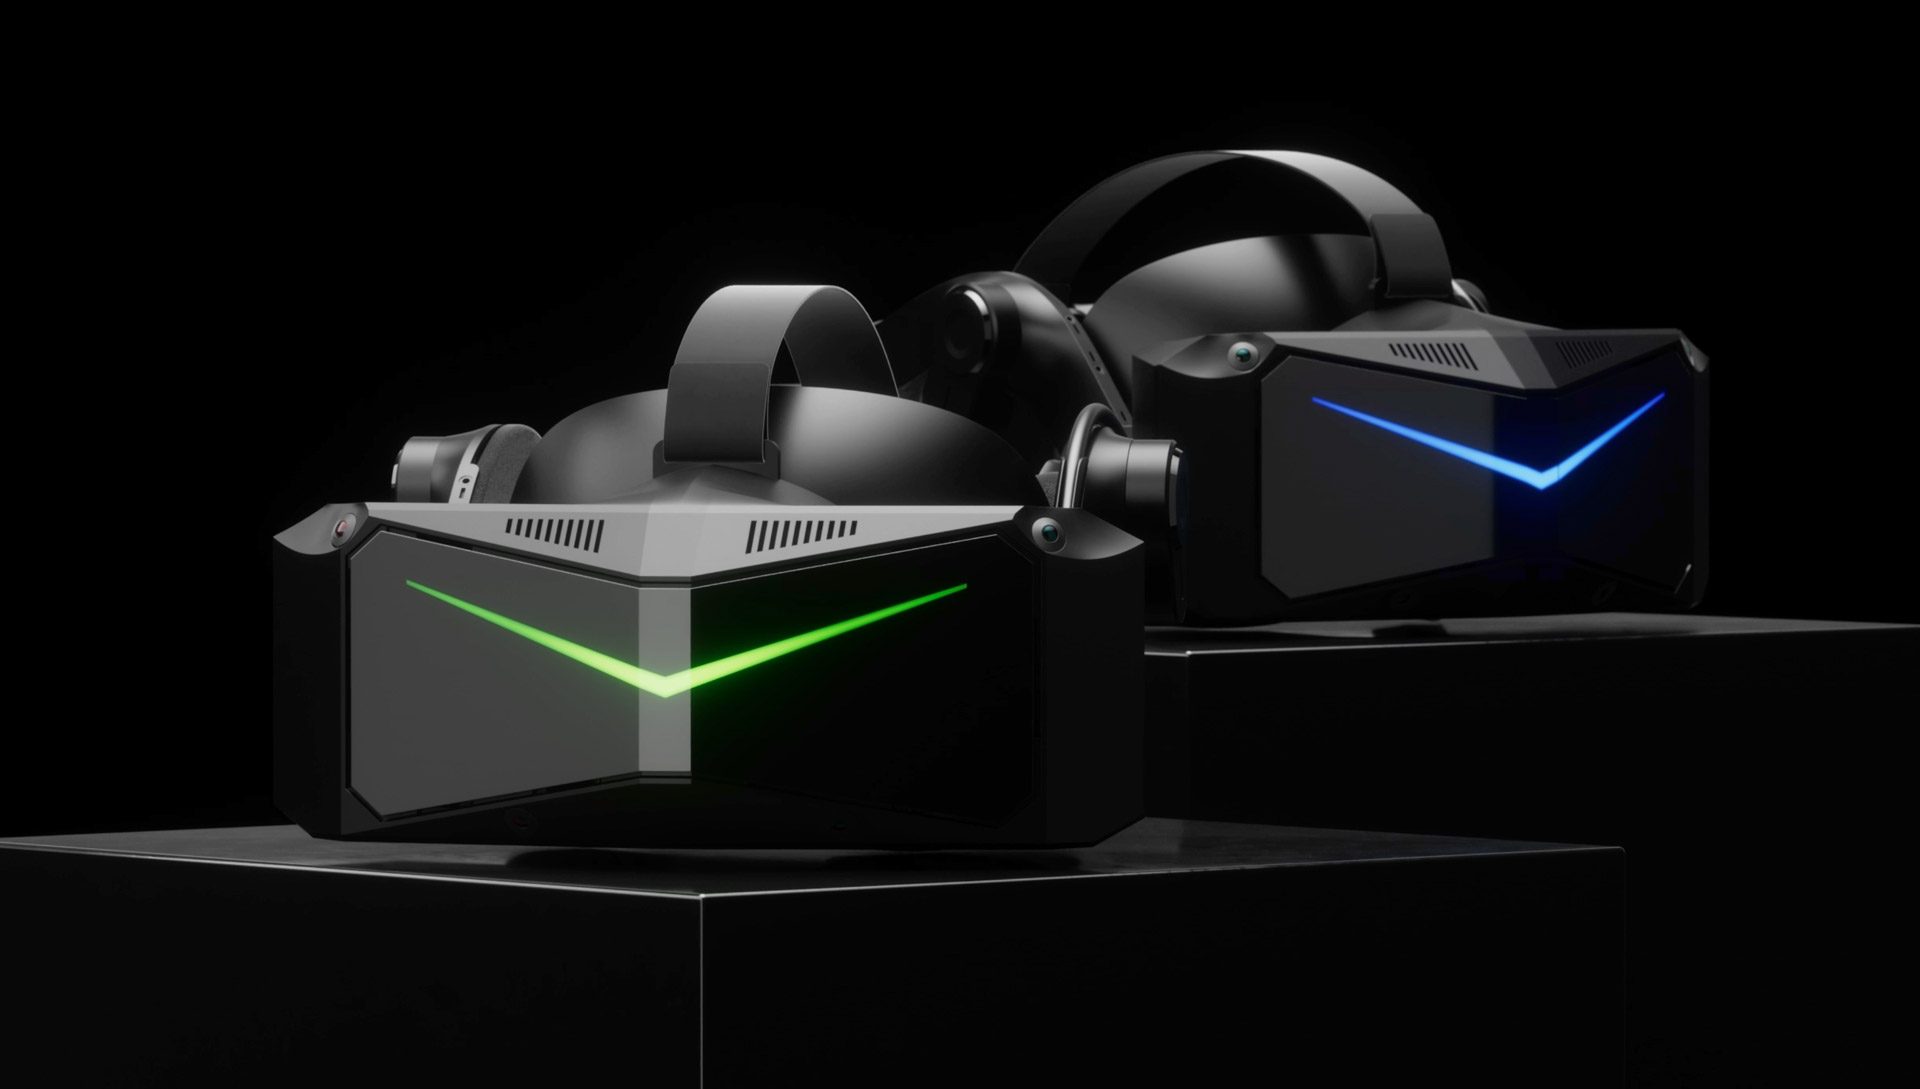 Pimax anuncia los auriculares VR Crystal Light y Crystal Super PC